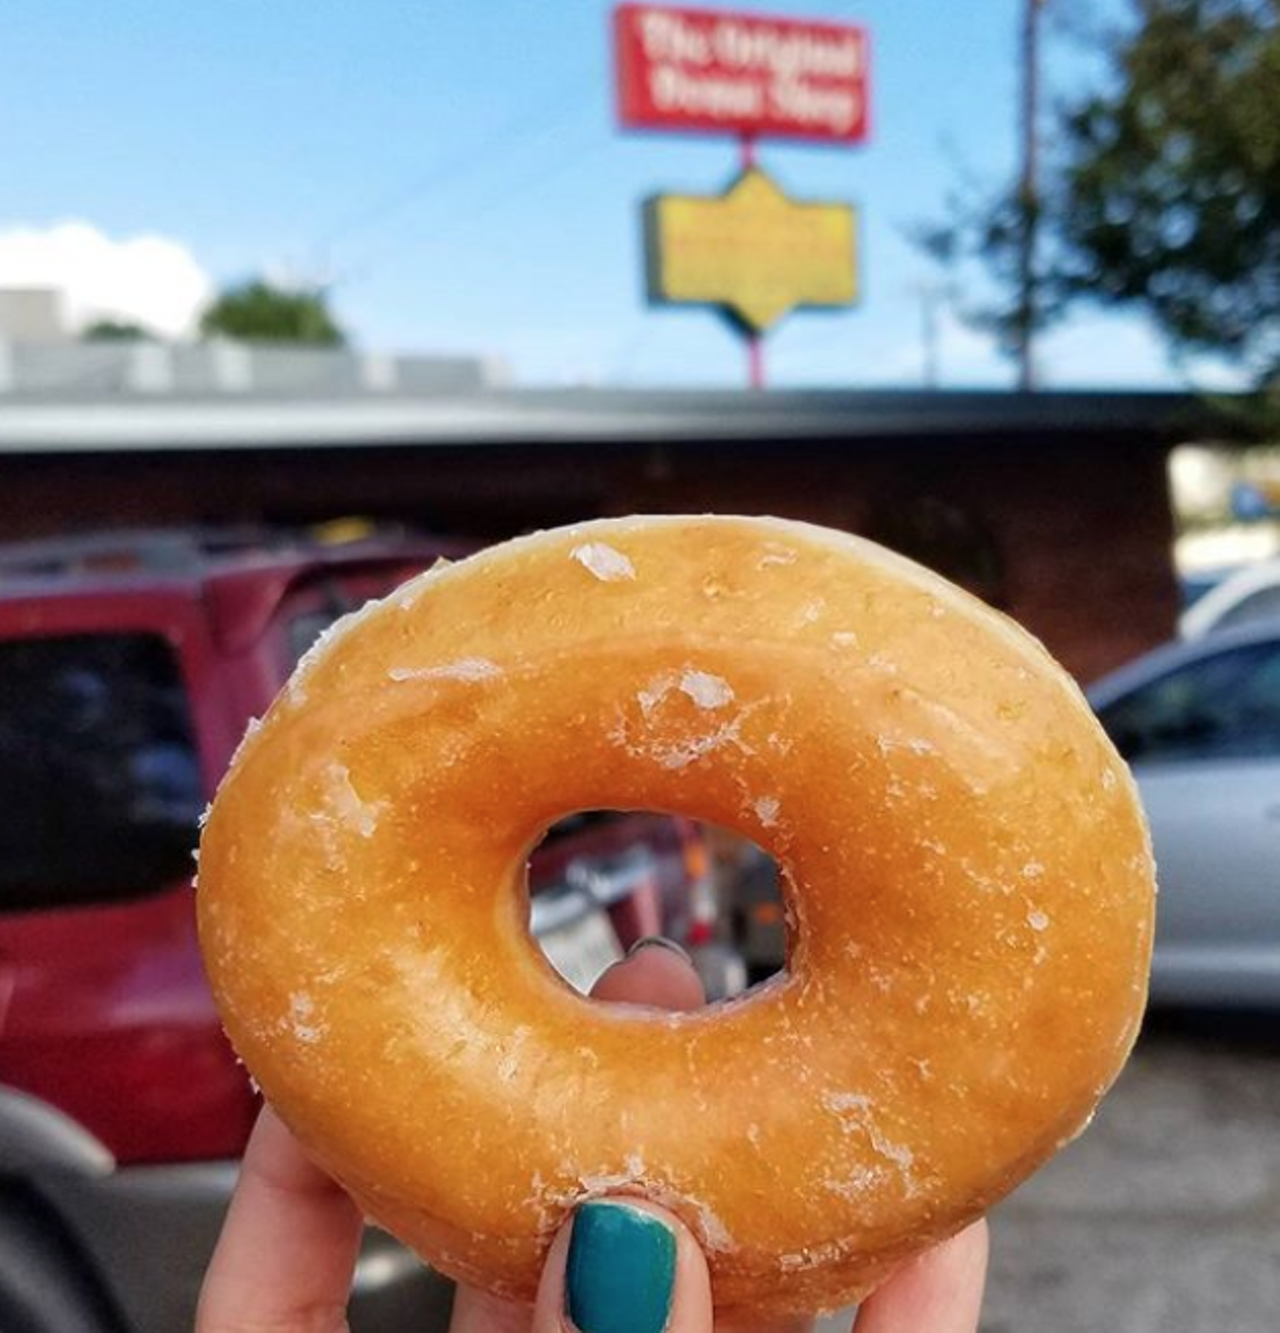 Best Local Donut Shop
The Original Donut Shop, 3307 Fredericksburg Road, (210) 734-5661, facebook.com/theoriginaldonutshop
Photo via Instagram / s.a.vory